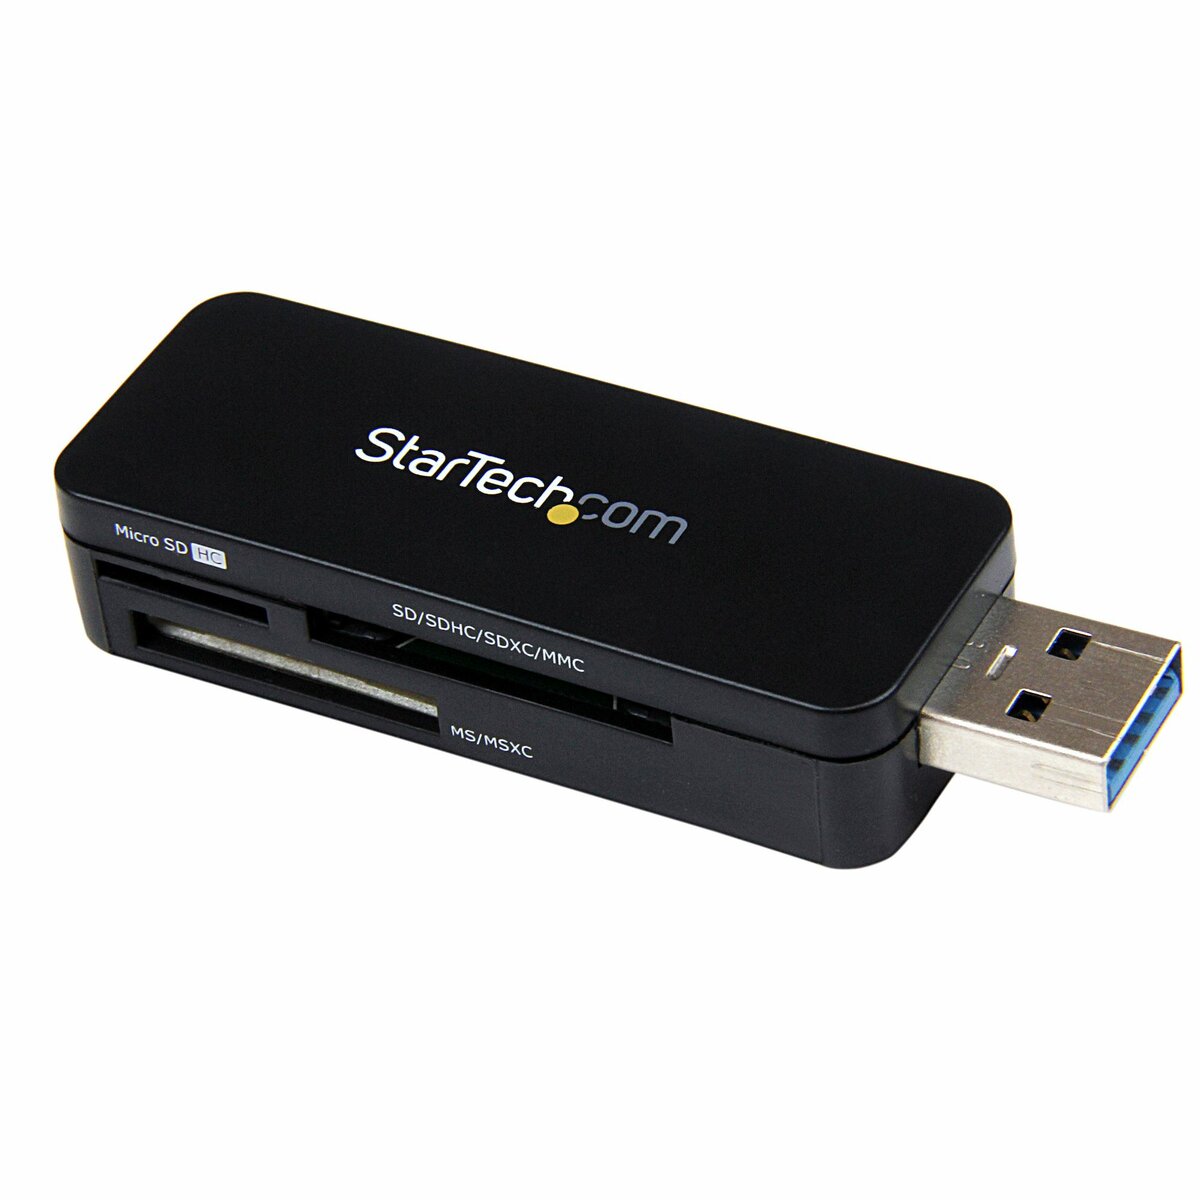 StarTech.com Lecteur carte CFast 2.0 - USB C - Lecteur enregistreur de  cartes mémoire USB 3.0 - Adaptateur USB Cfast - Alimenté par USB - lecteur  de carte - USB-C 3.0 (CFASTRWU3C)